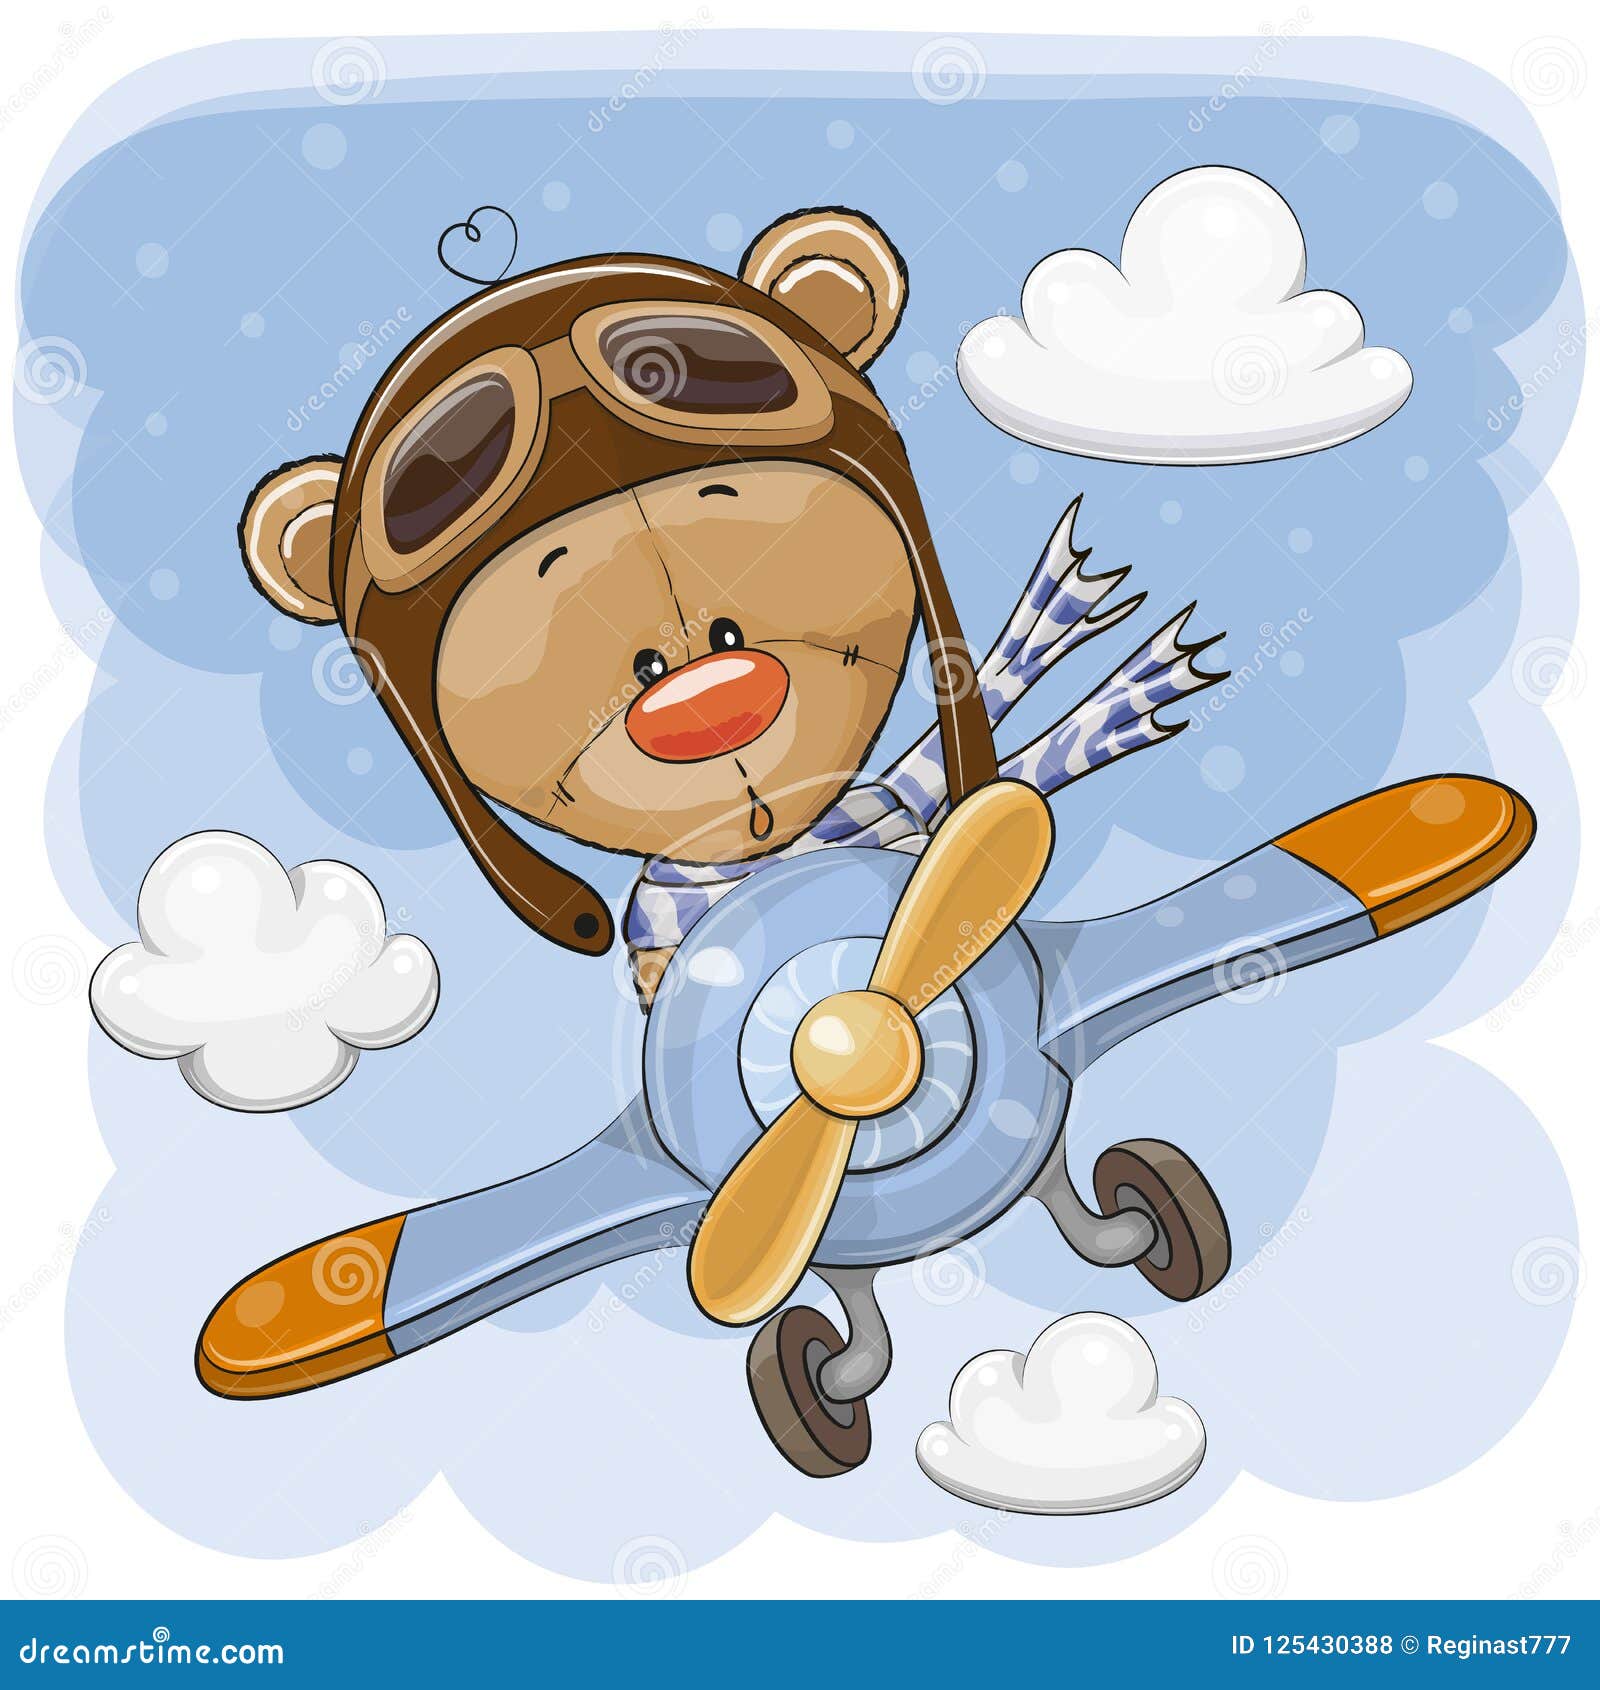 cute teddy bear is flying on a plane